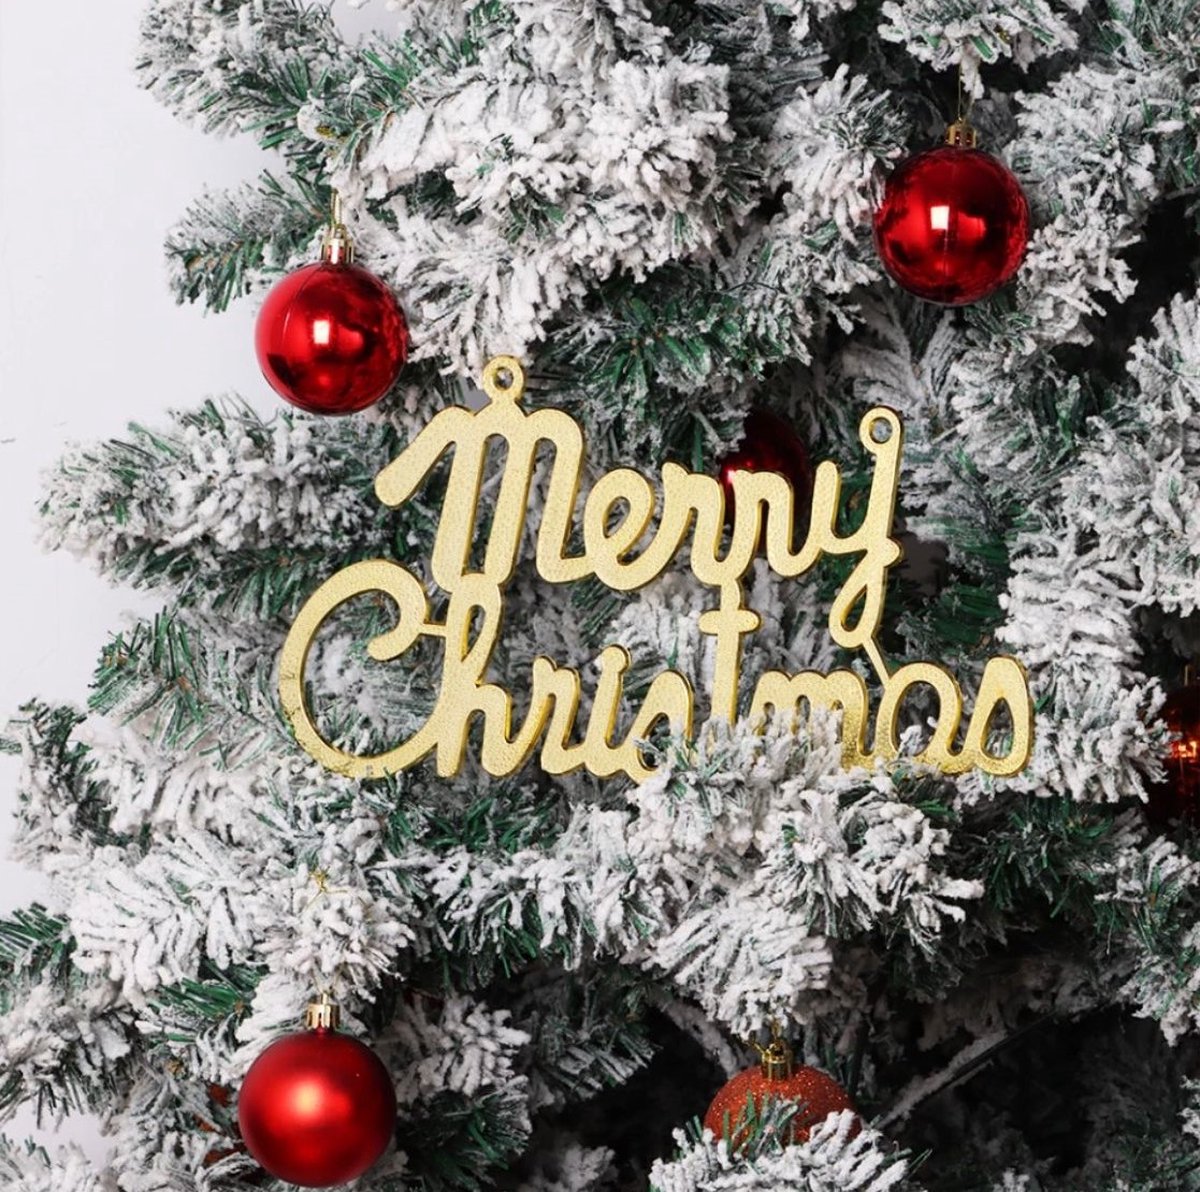 Kersthanger - kerstdecoratie -kerstboom- 2 stuks -merry christmas hanger goud -merry christmas gold-m erry christmas voor in de kerstboom -kerstboomhanger merry christmas -decoratie voor de kerstboom - Kerstboom Decoratie - Kerstsfeer – Christmas